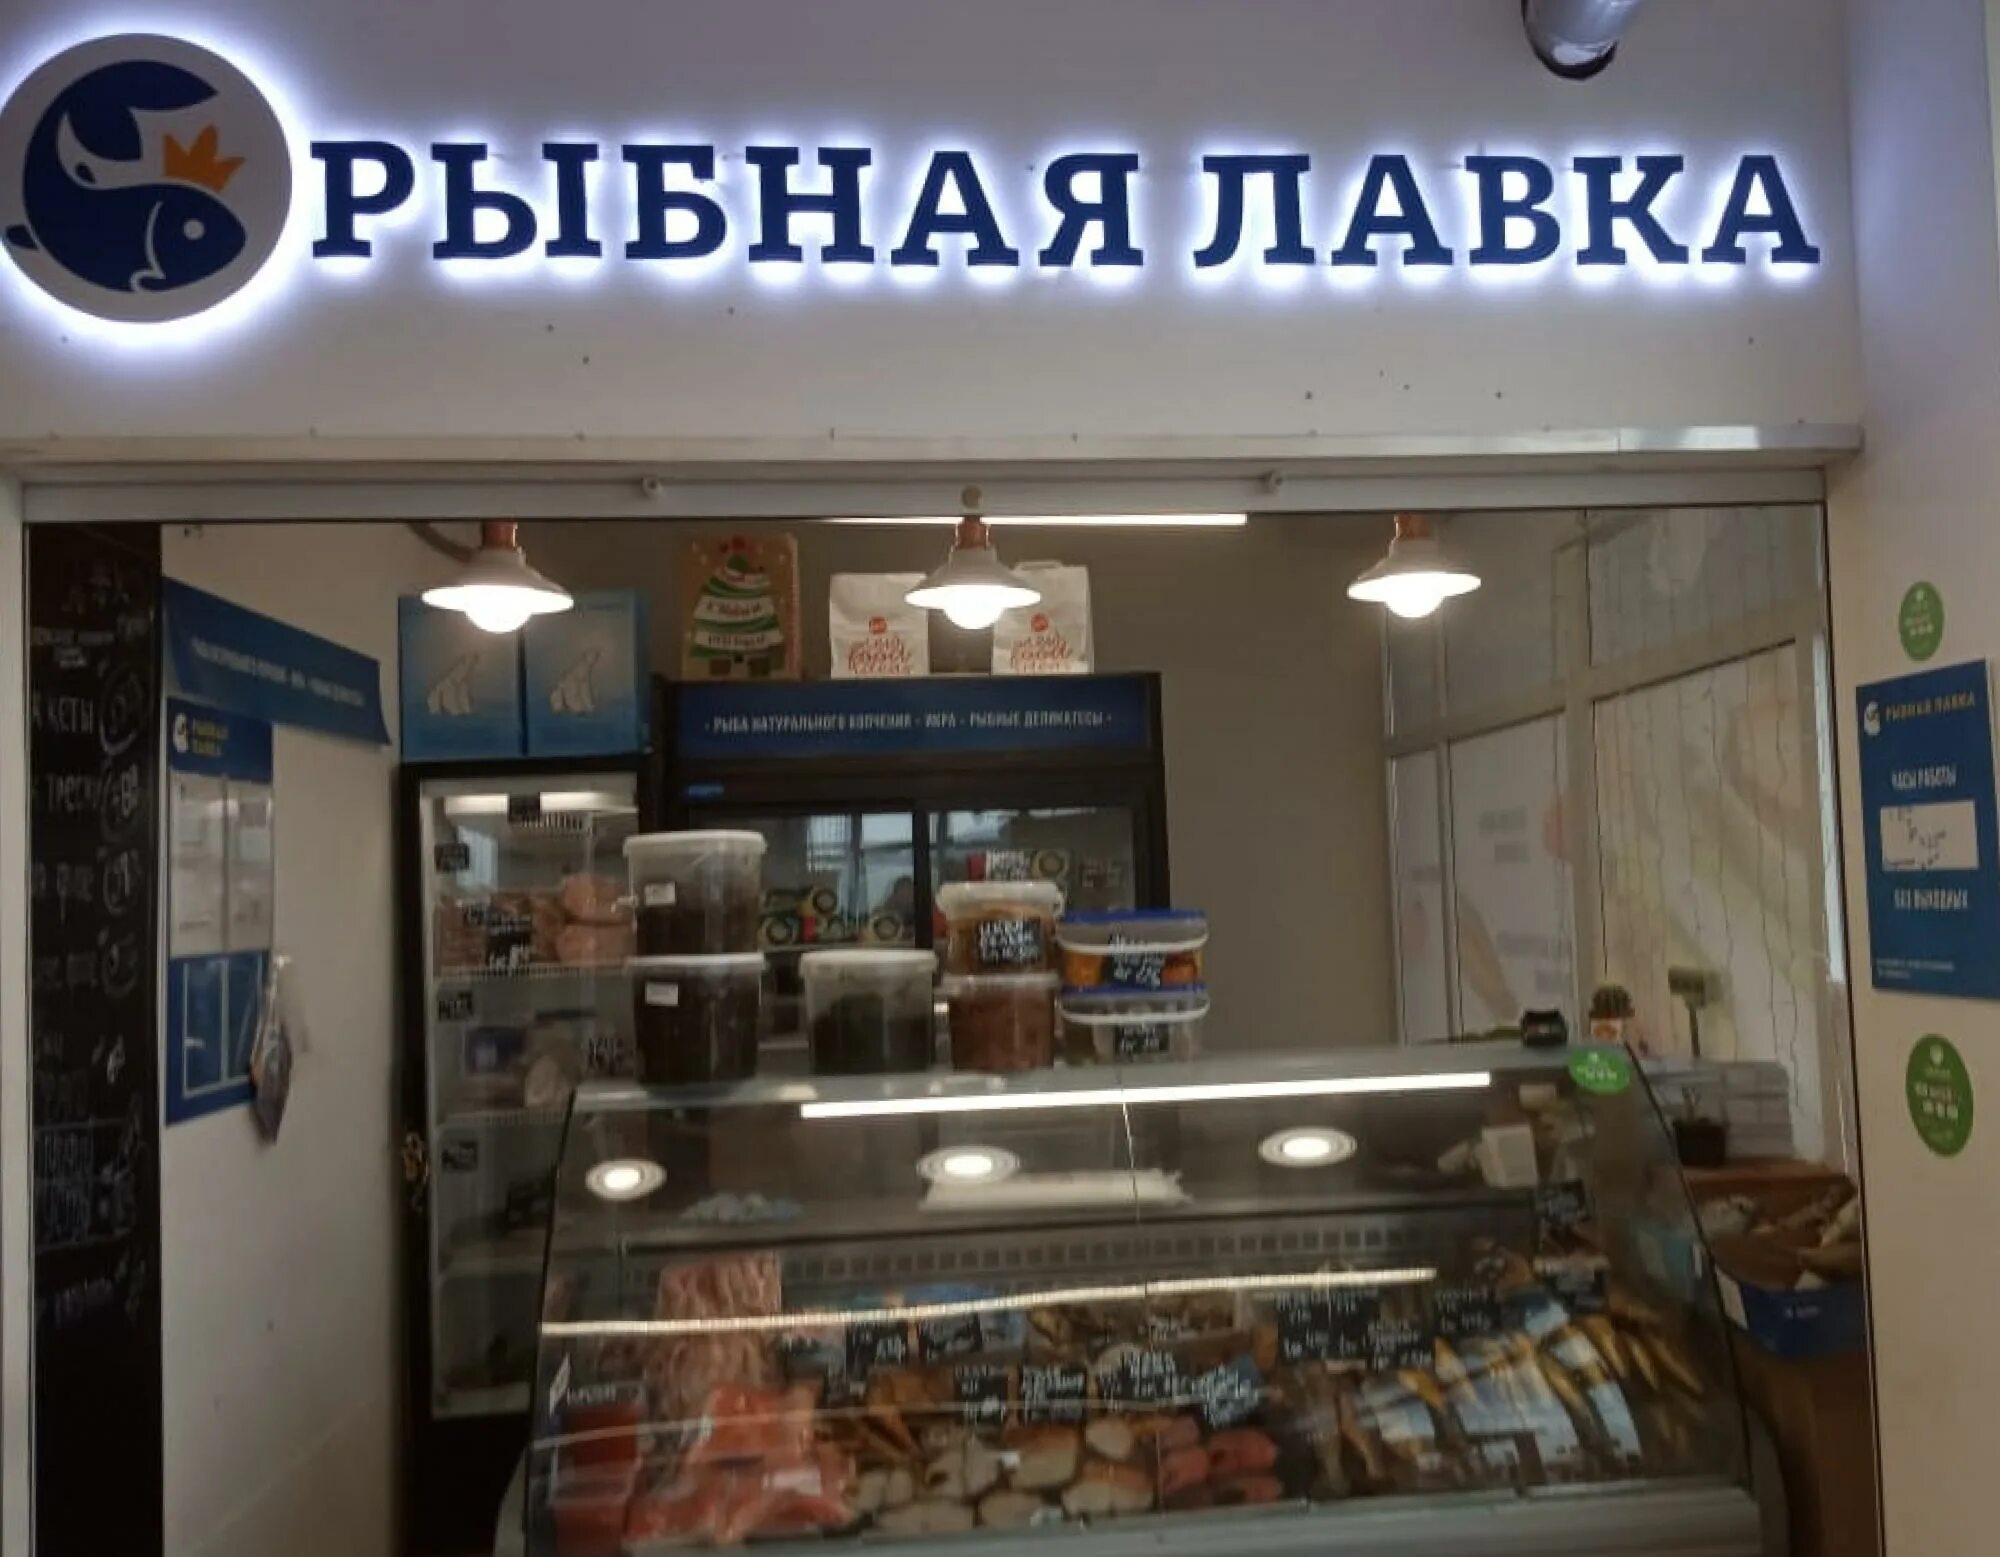 Рыбный магазин московский. Рыбная Лавка. Рыба в магазине. Рыбный магазин вывеска. Специализированные рыбные магазины.